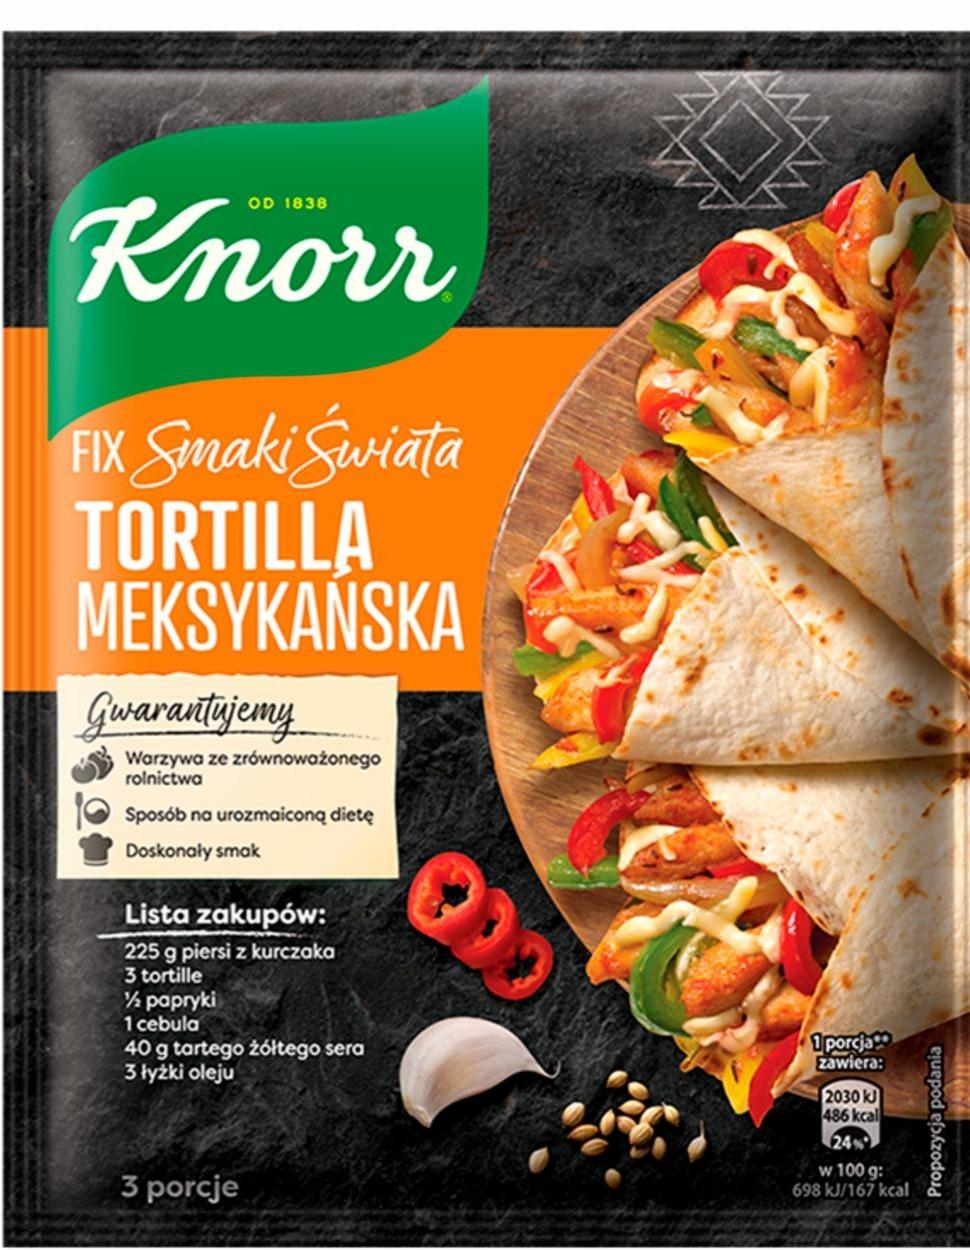 Zdjęcia - Fix Smaki Świata Tortilla Meksykańska Knorr